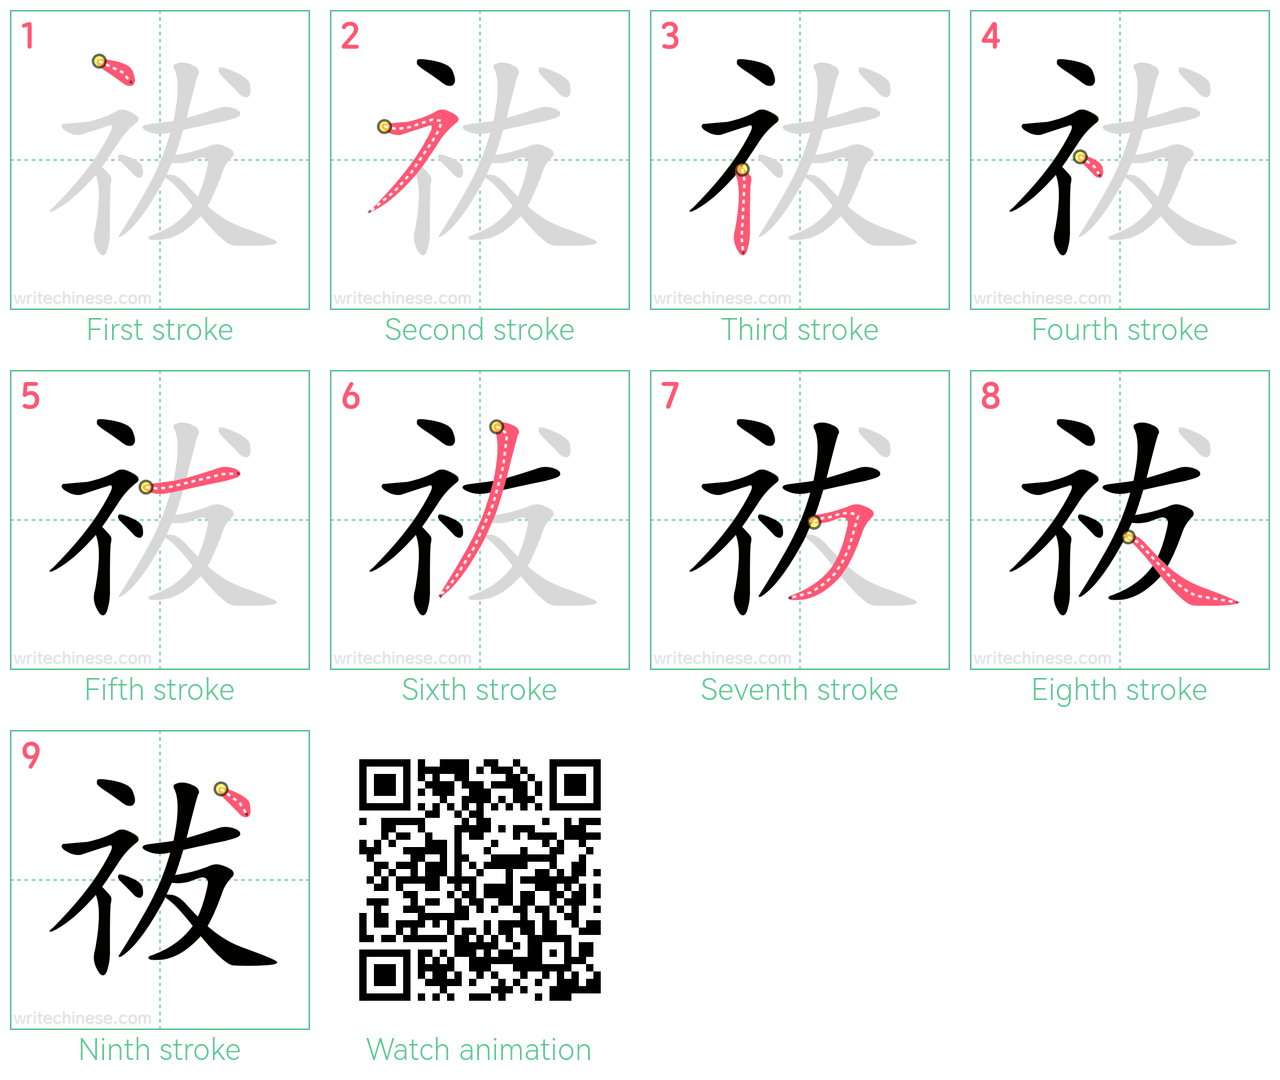 祓 step-by-step stroke order diagrams